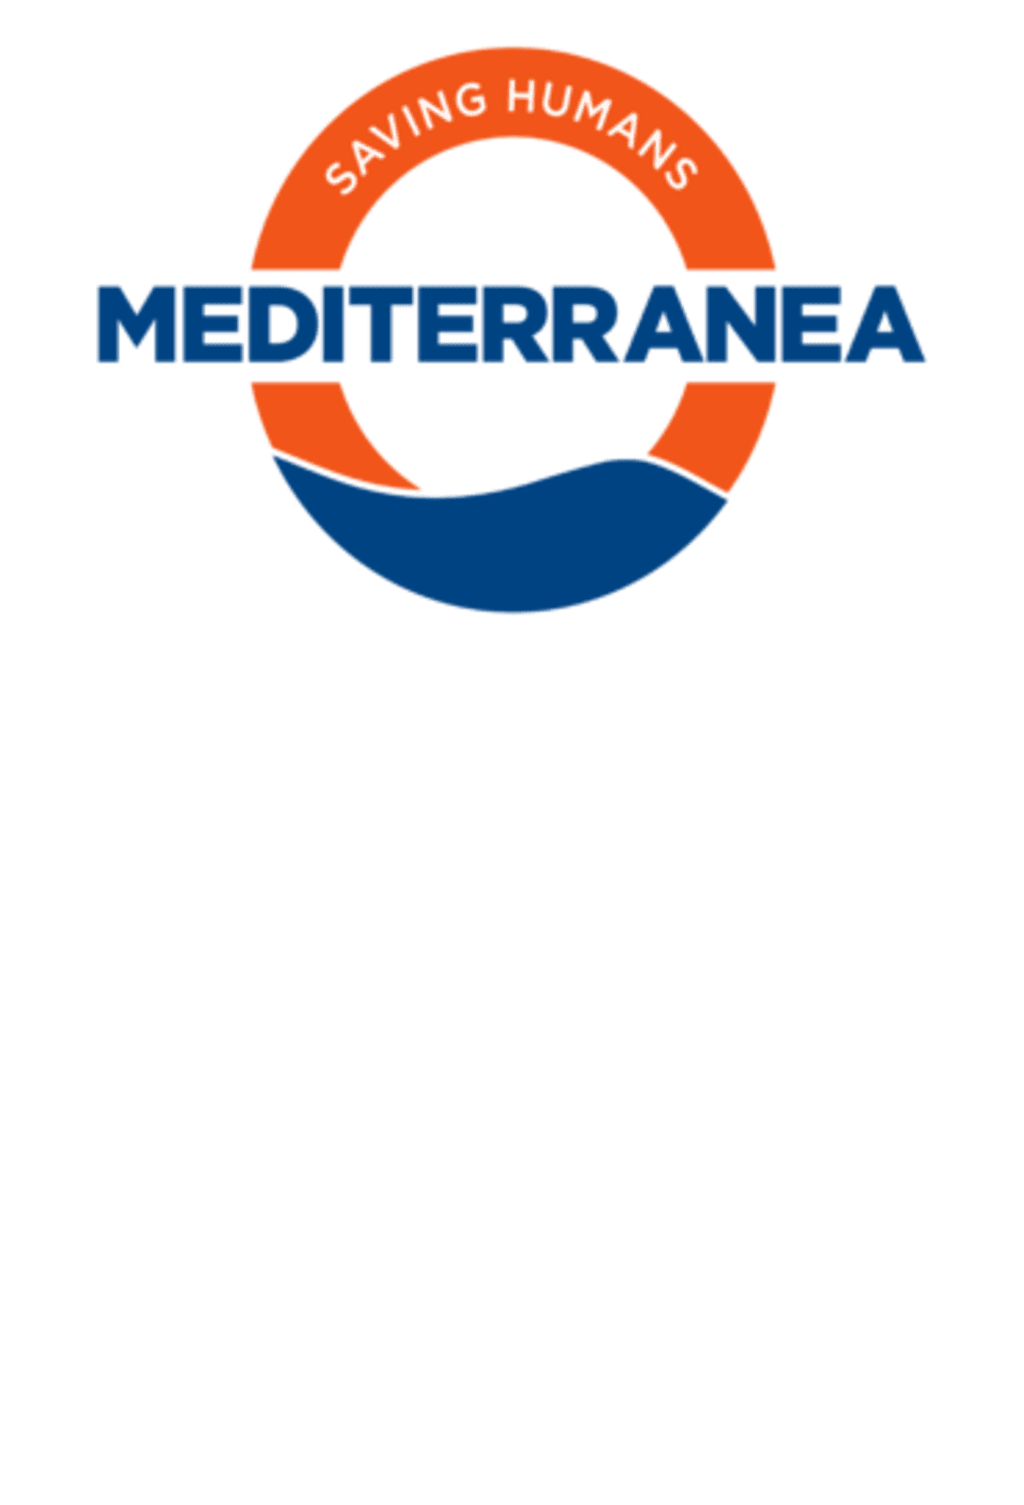 Mediterranea - logo blu